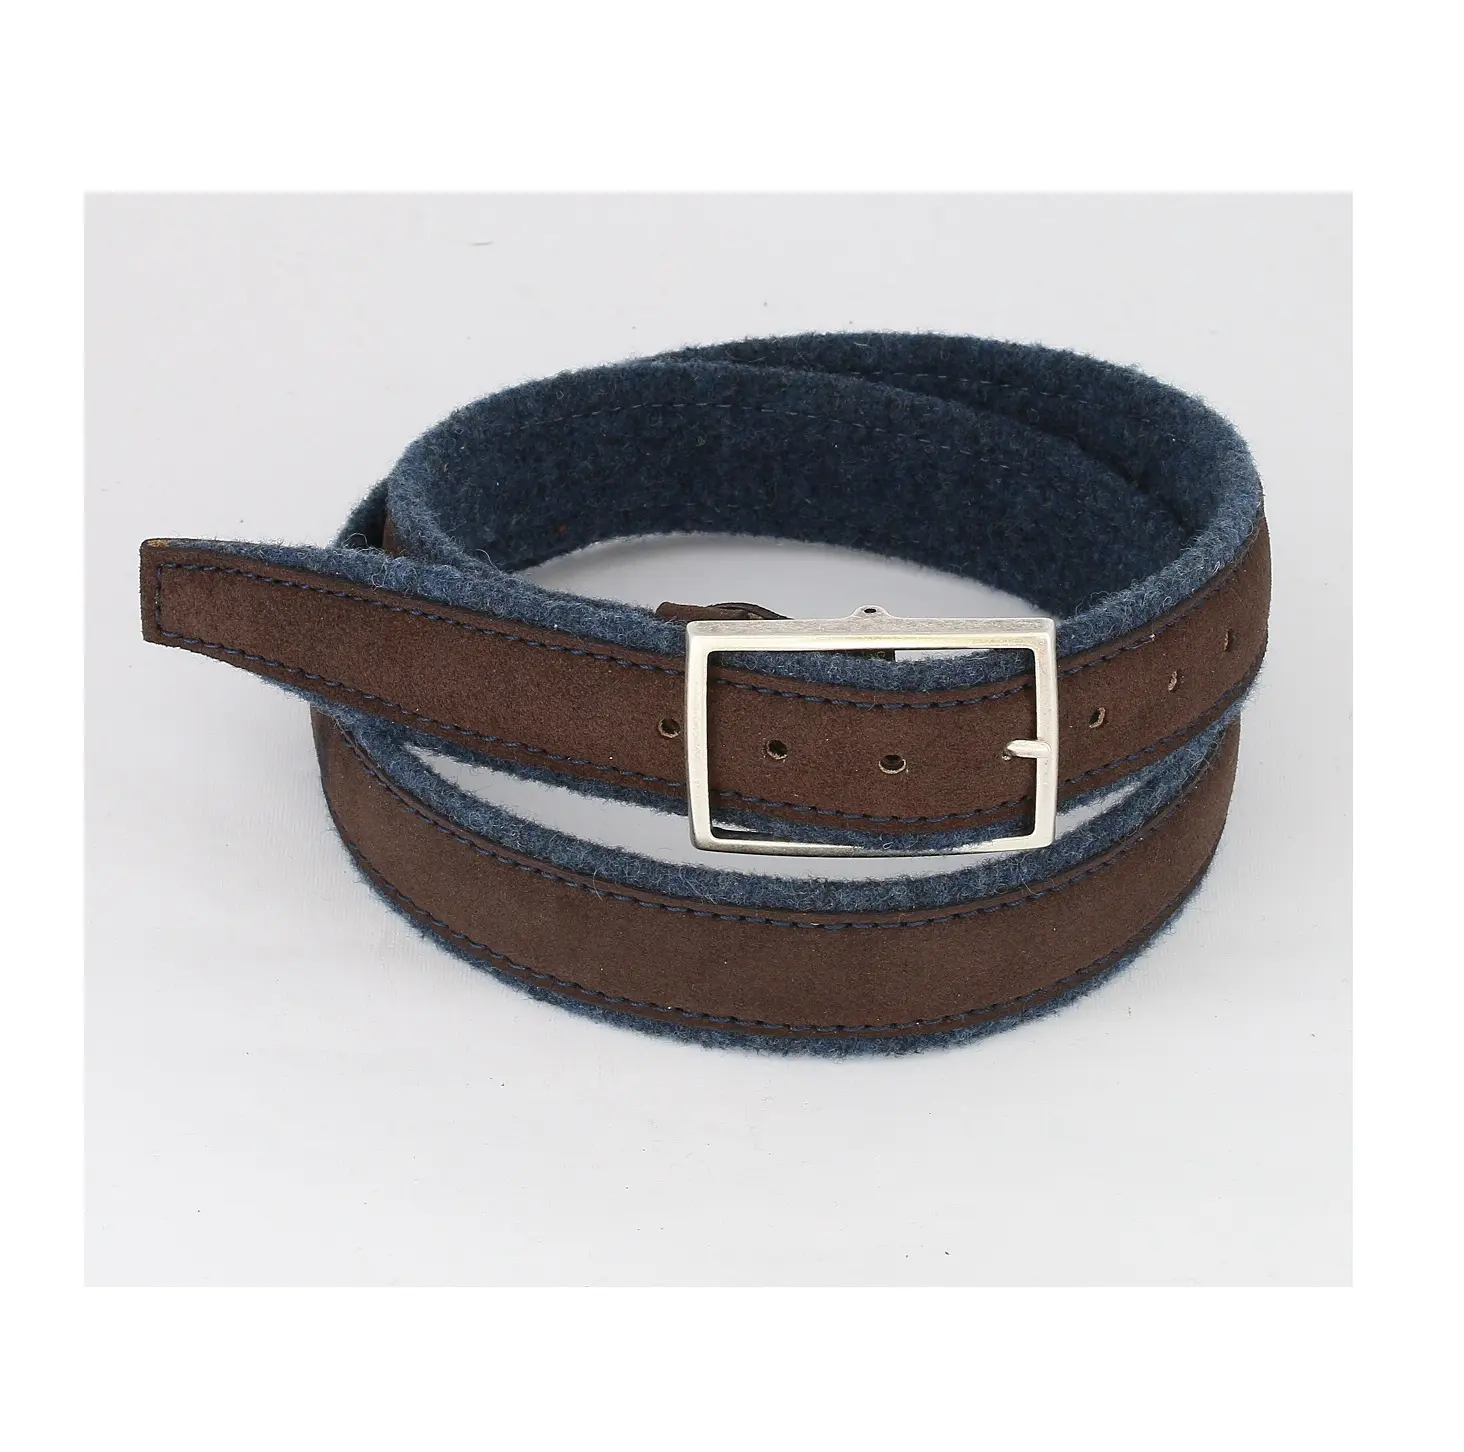 Cinturón de piel de becerro auténtica y lana virgen hecho a mano en Italia para hombre, con costuras de cuero cosidas arriba y hebilla de acero